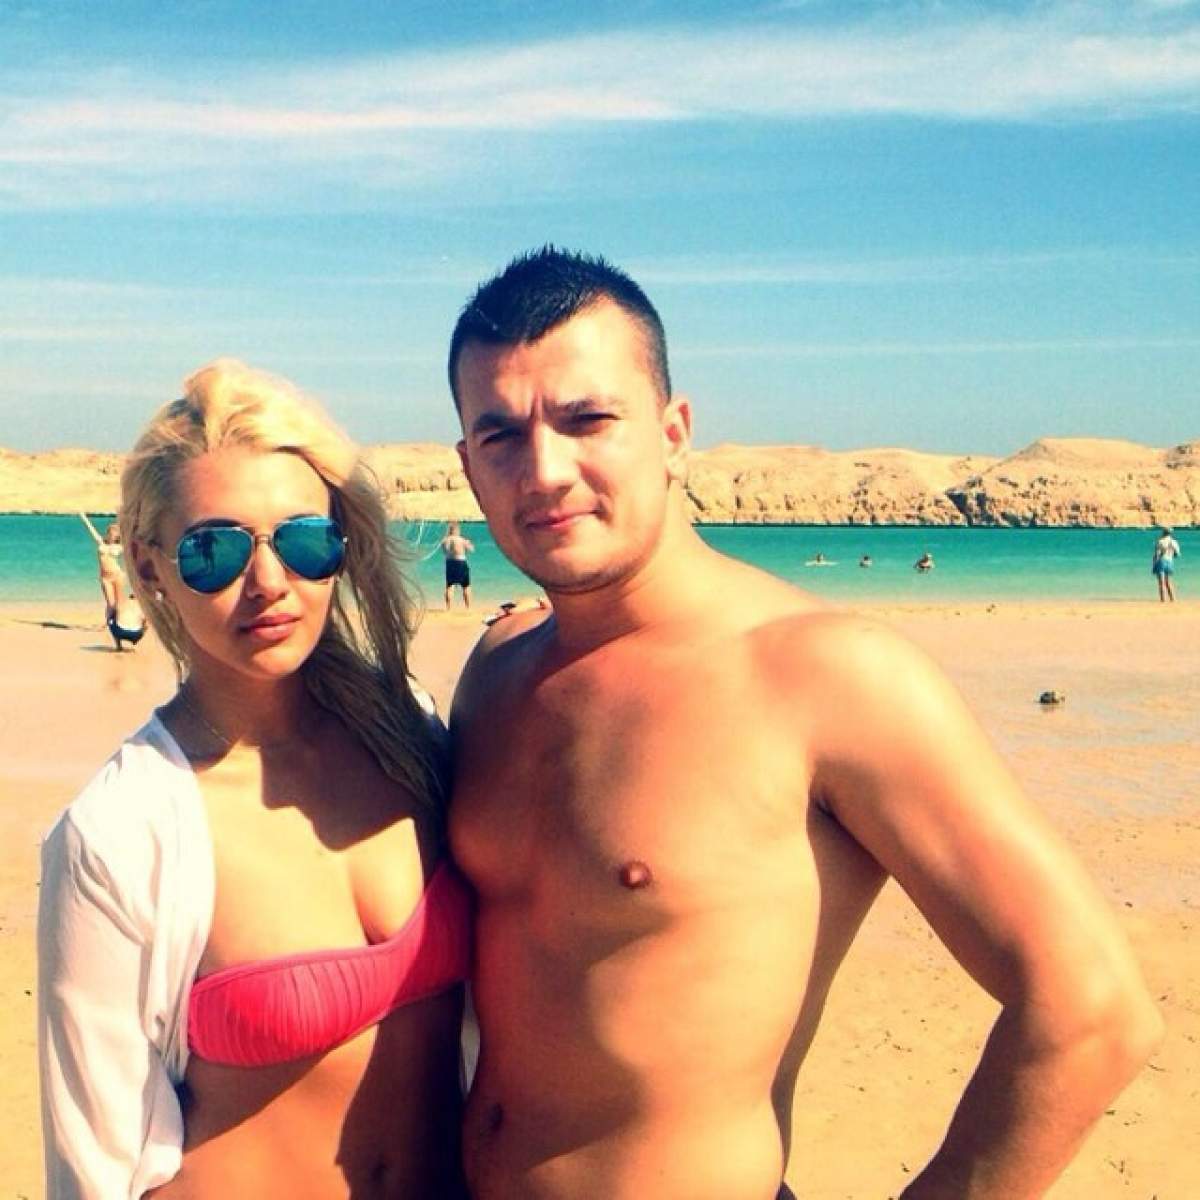 Gabi Aur, fostul concurent de la "Burlăciţa", SURPRINS în ipostaze intime cu iubita! Fotografii inedite din vacanţa în Egipt